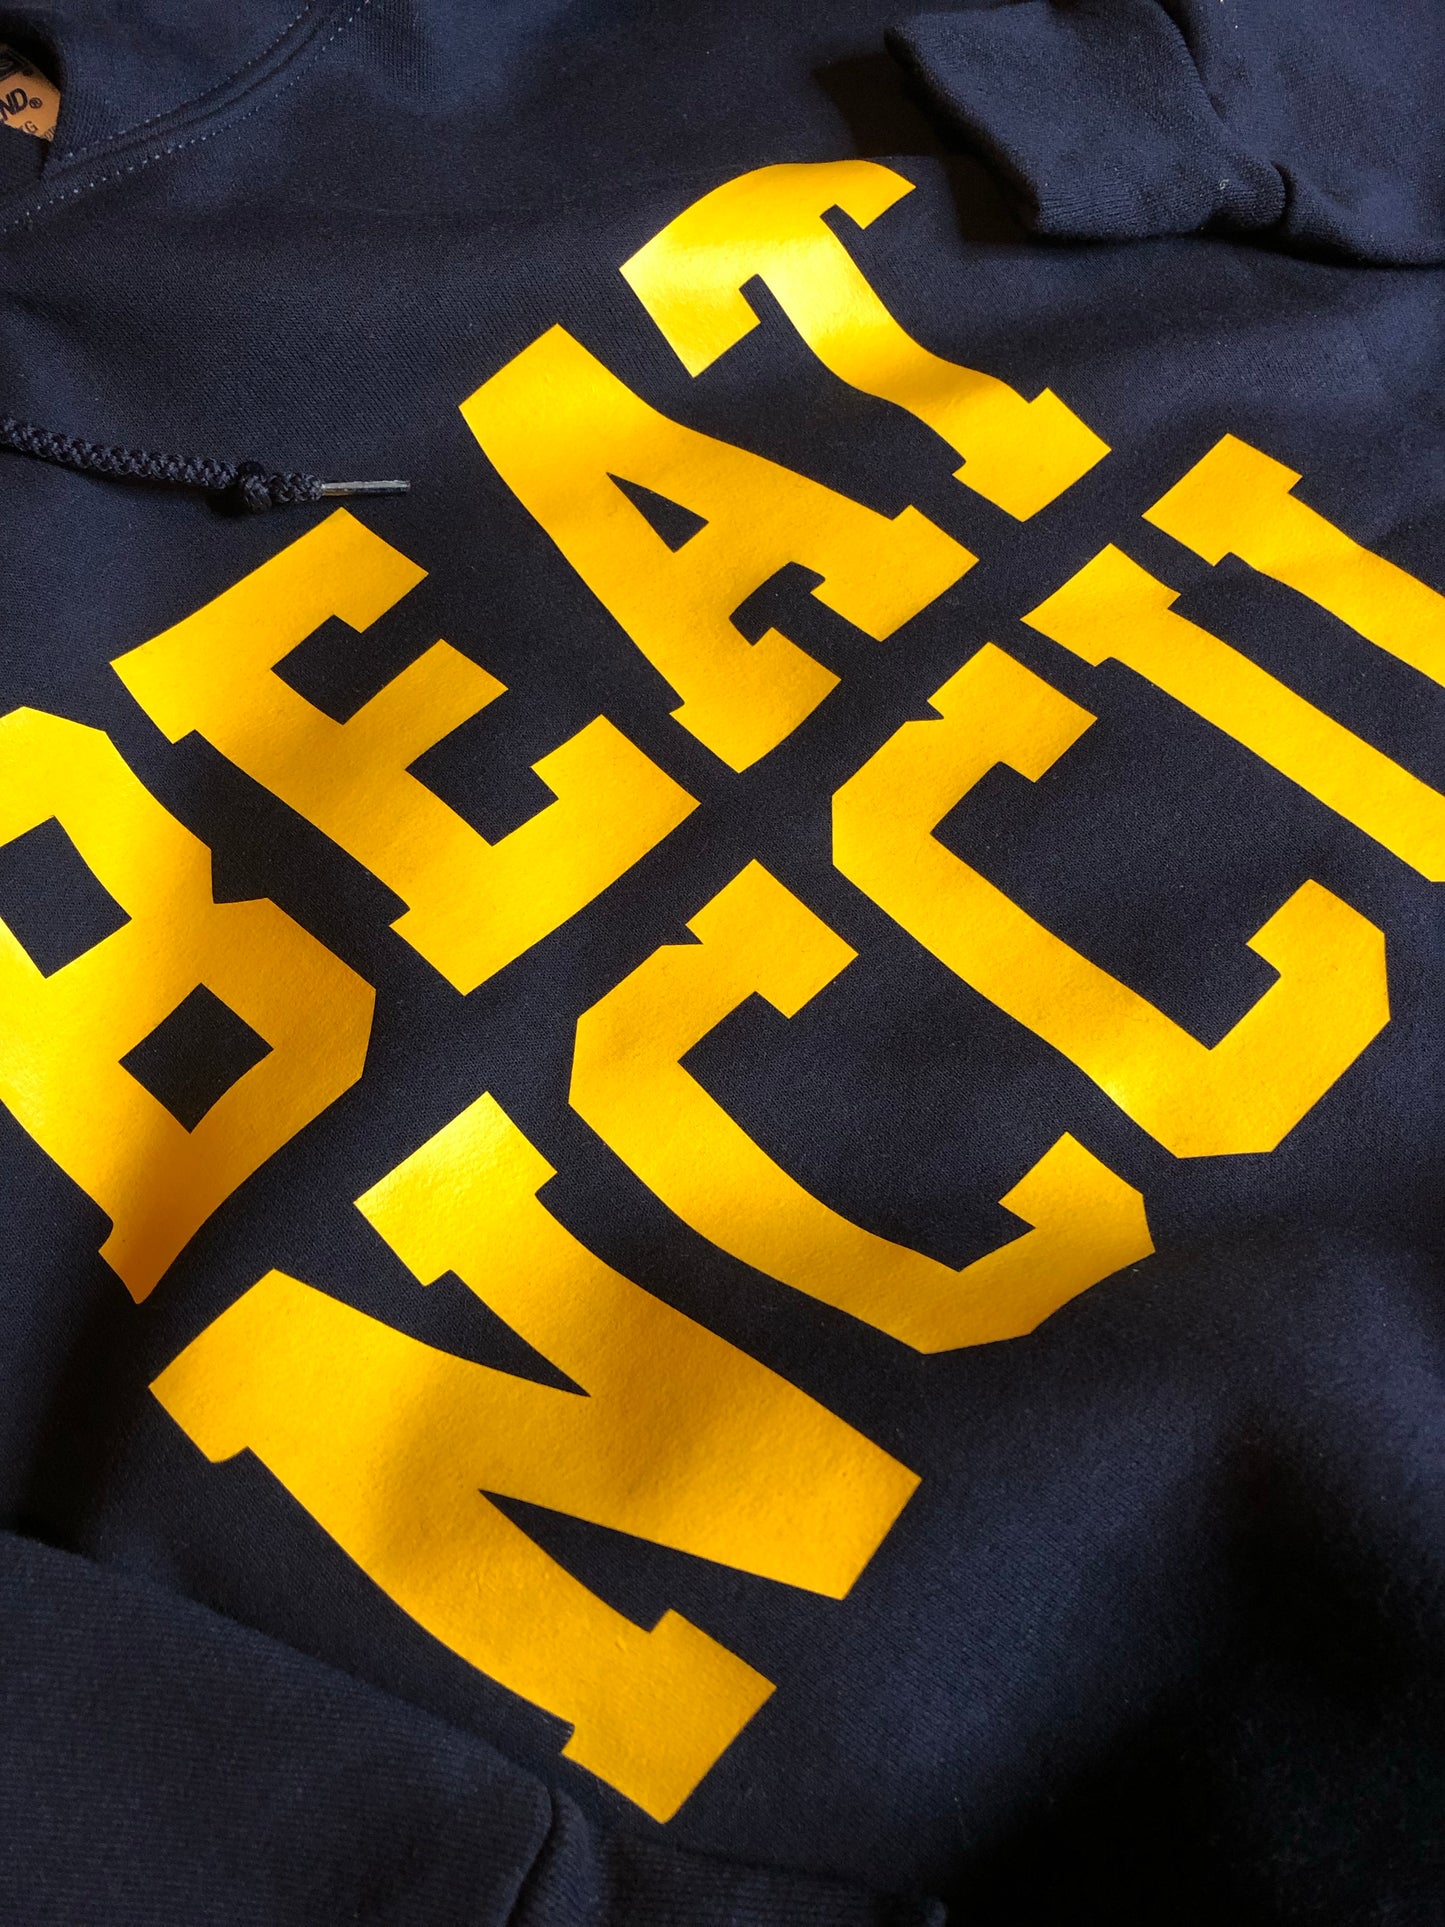 BEAT NCCU t-shirt